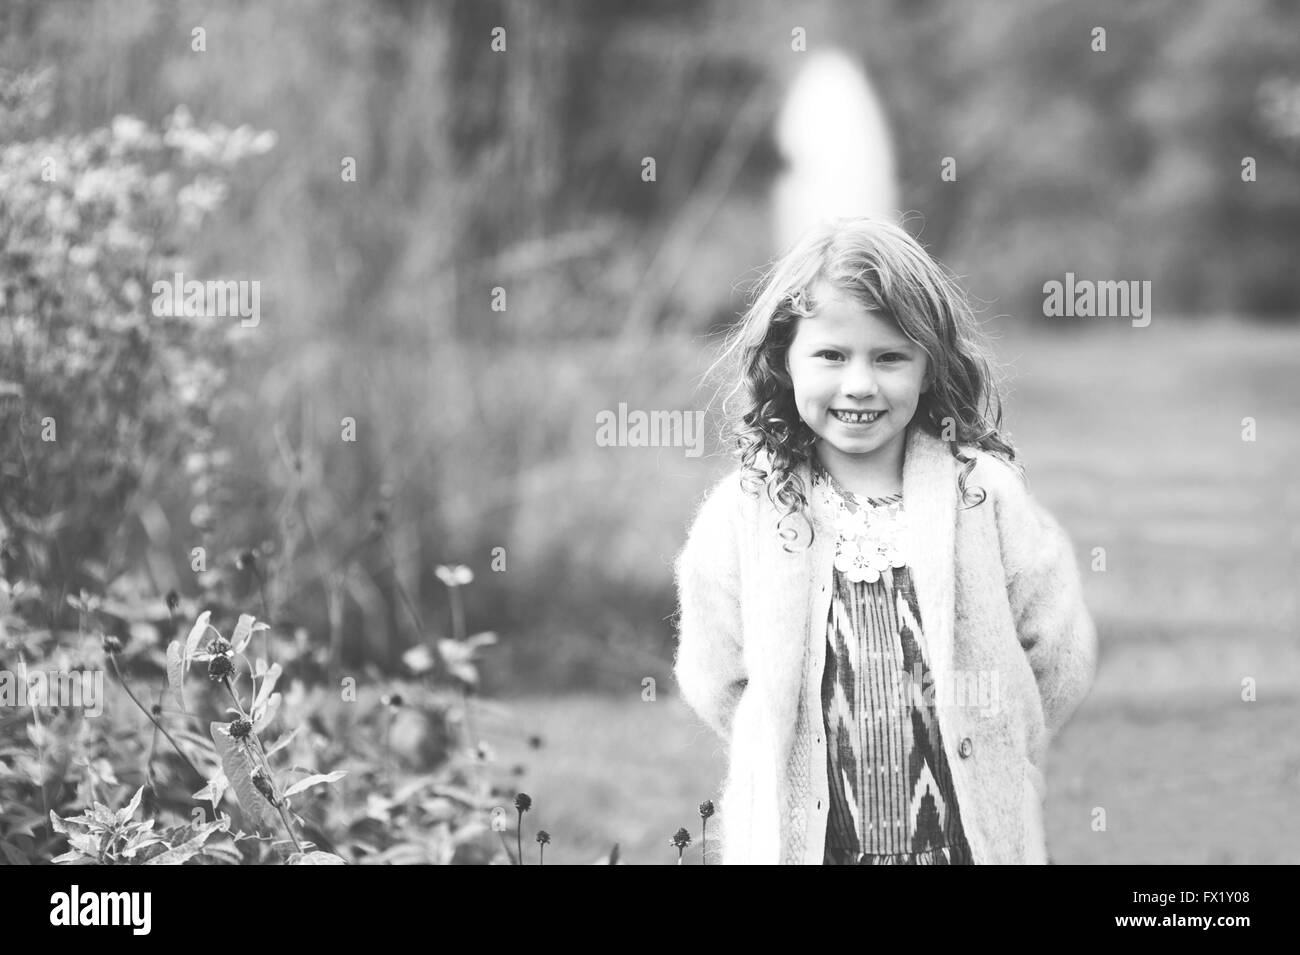 Le noir et blanc portrait d'une jeune fille dans un parc. Banque D'Images